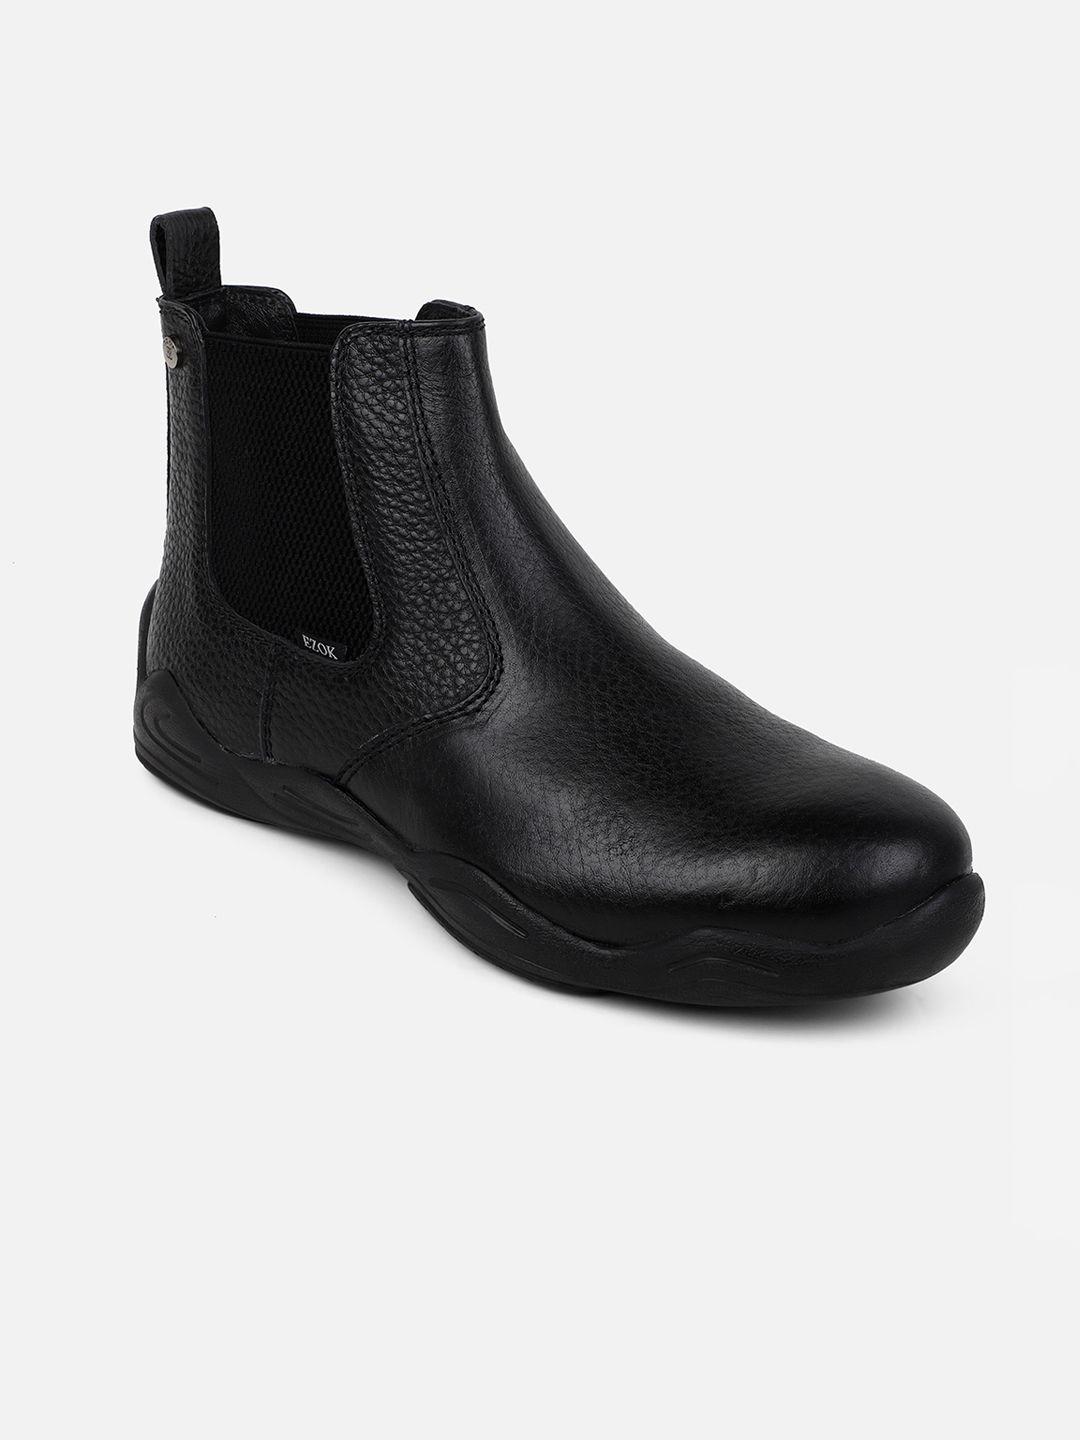 ezok men black leather chelsea boots